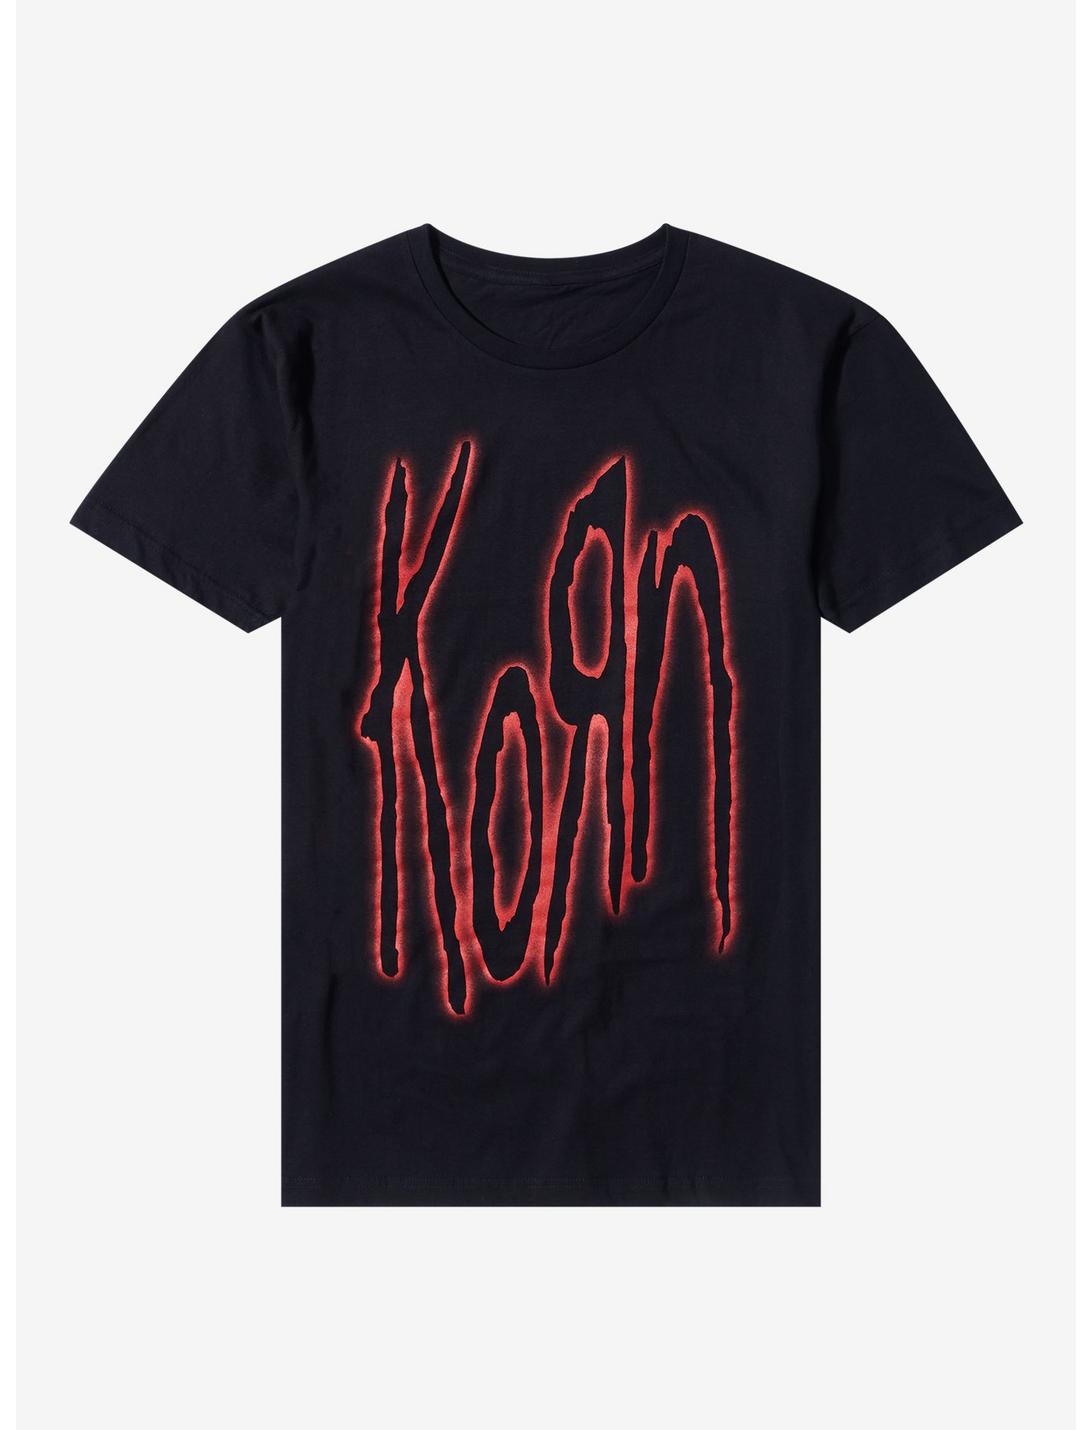 Korn Red Outlined Logo Boyfriend Fit Girls T-Shirt, BLACK, hi-res